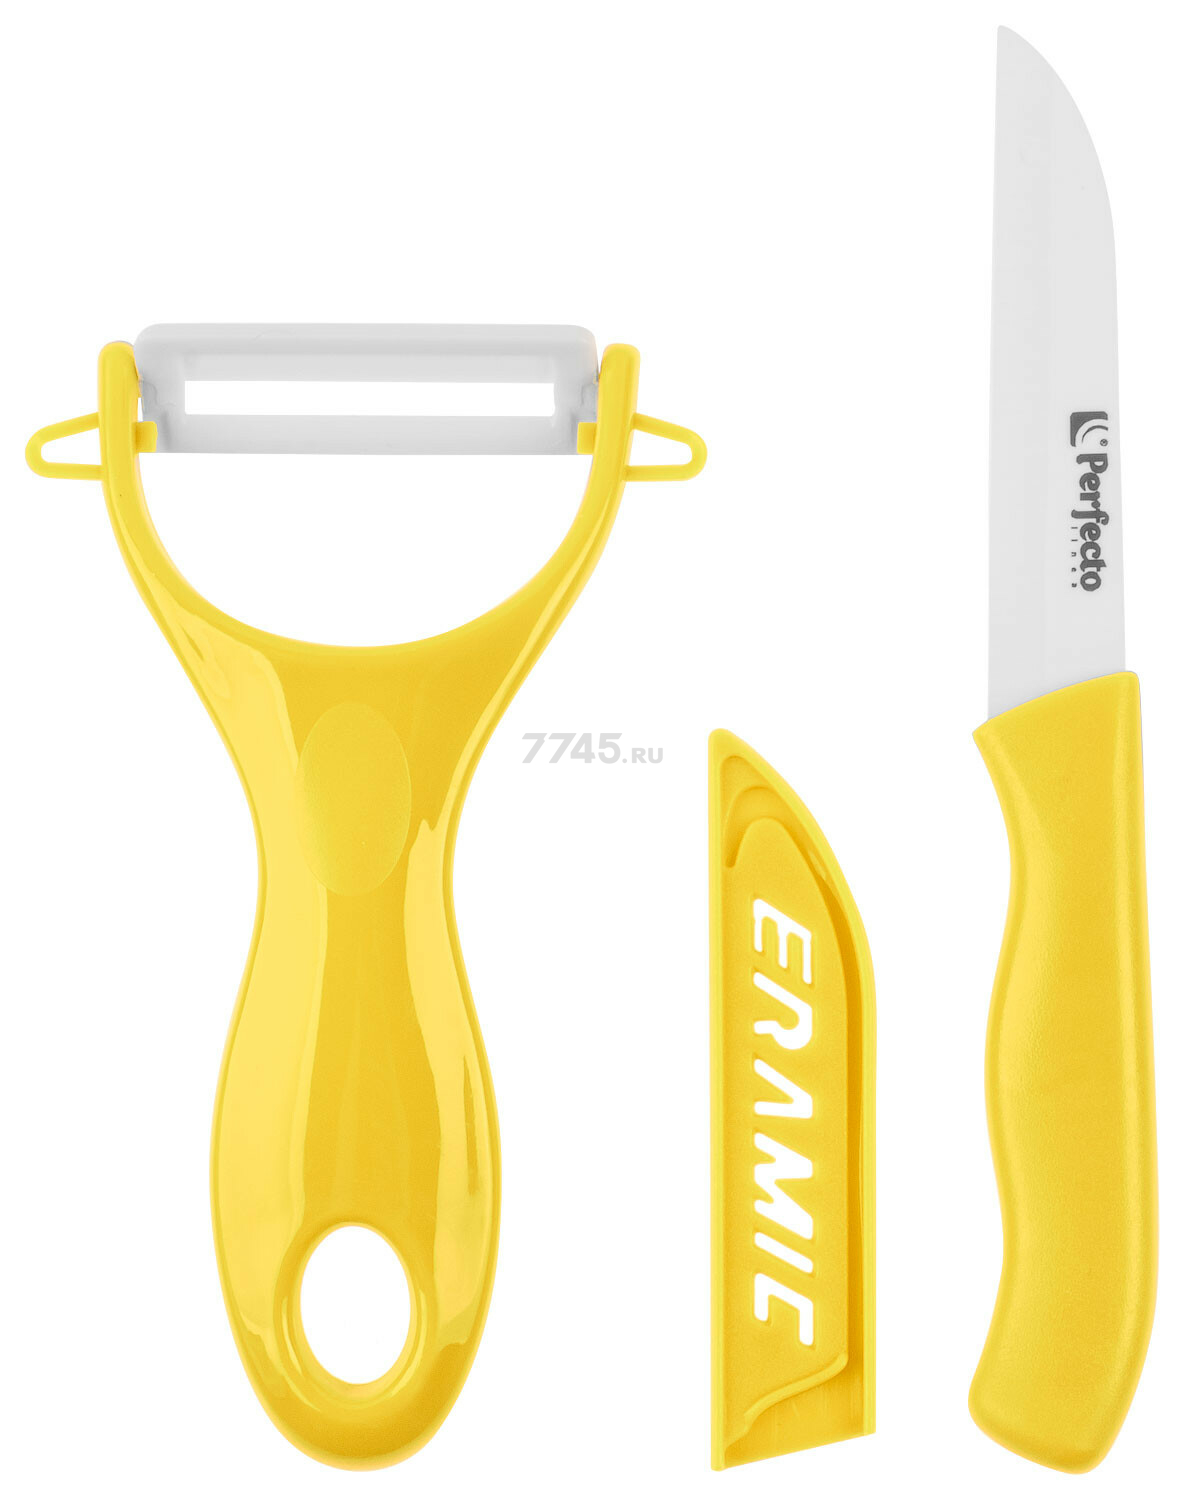 Набор ножей PERFECTO LINEA Starcook 2 предмета желтый (21-002011)